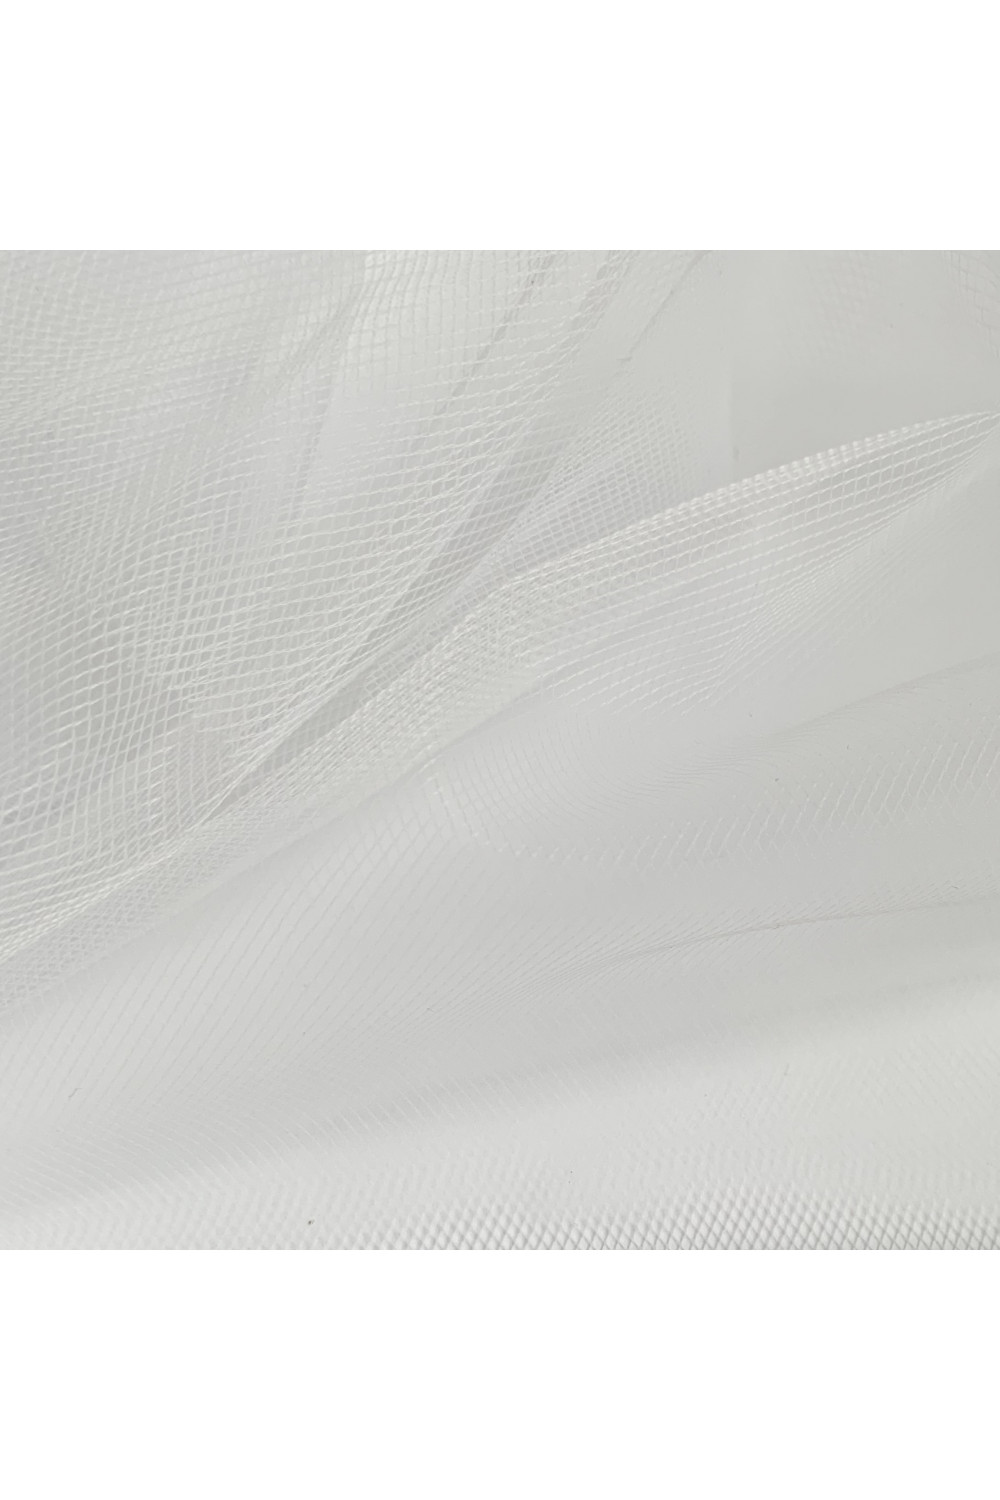 Tiul biały na dekoracje spódnice suknie. Tiul dekoracyjny